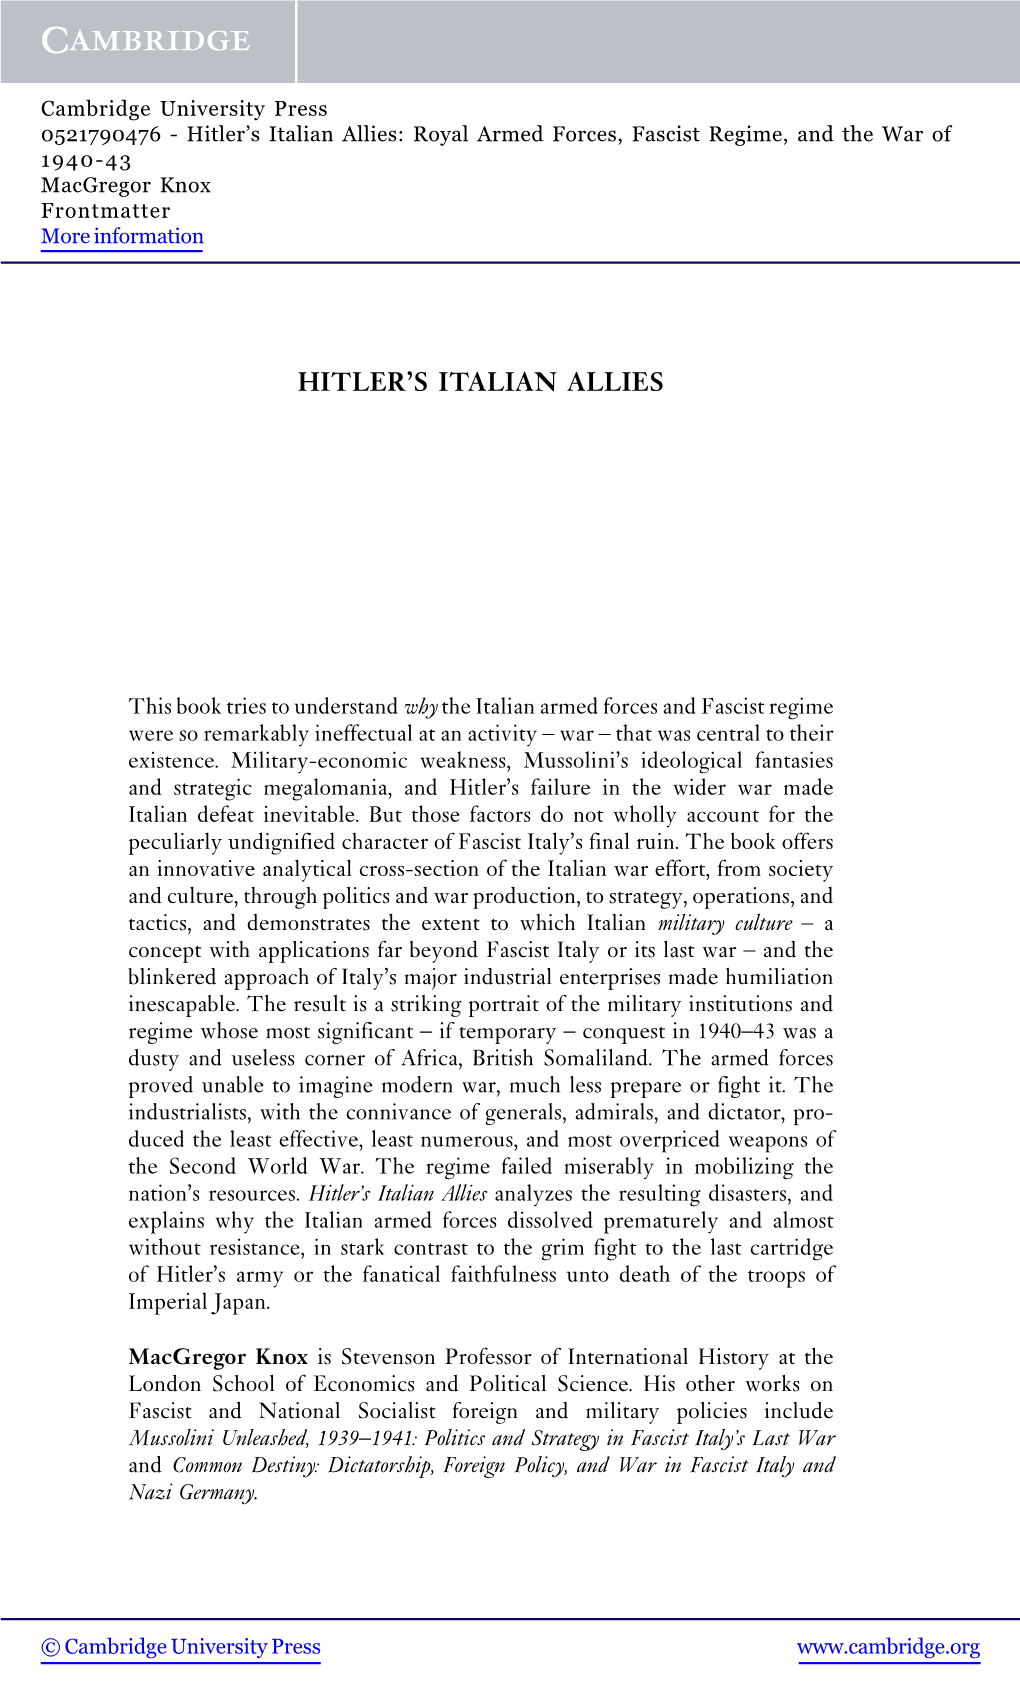 Hitler's Italian Allies